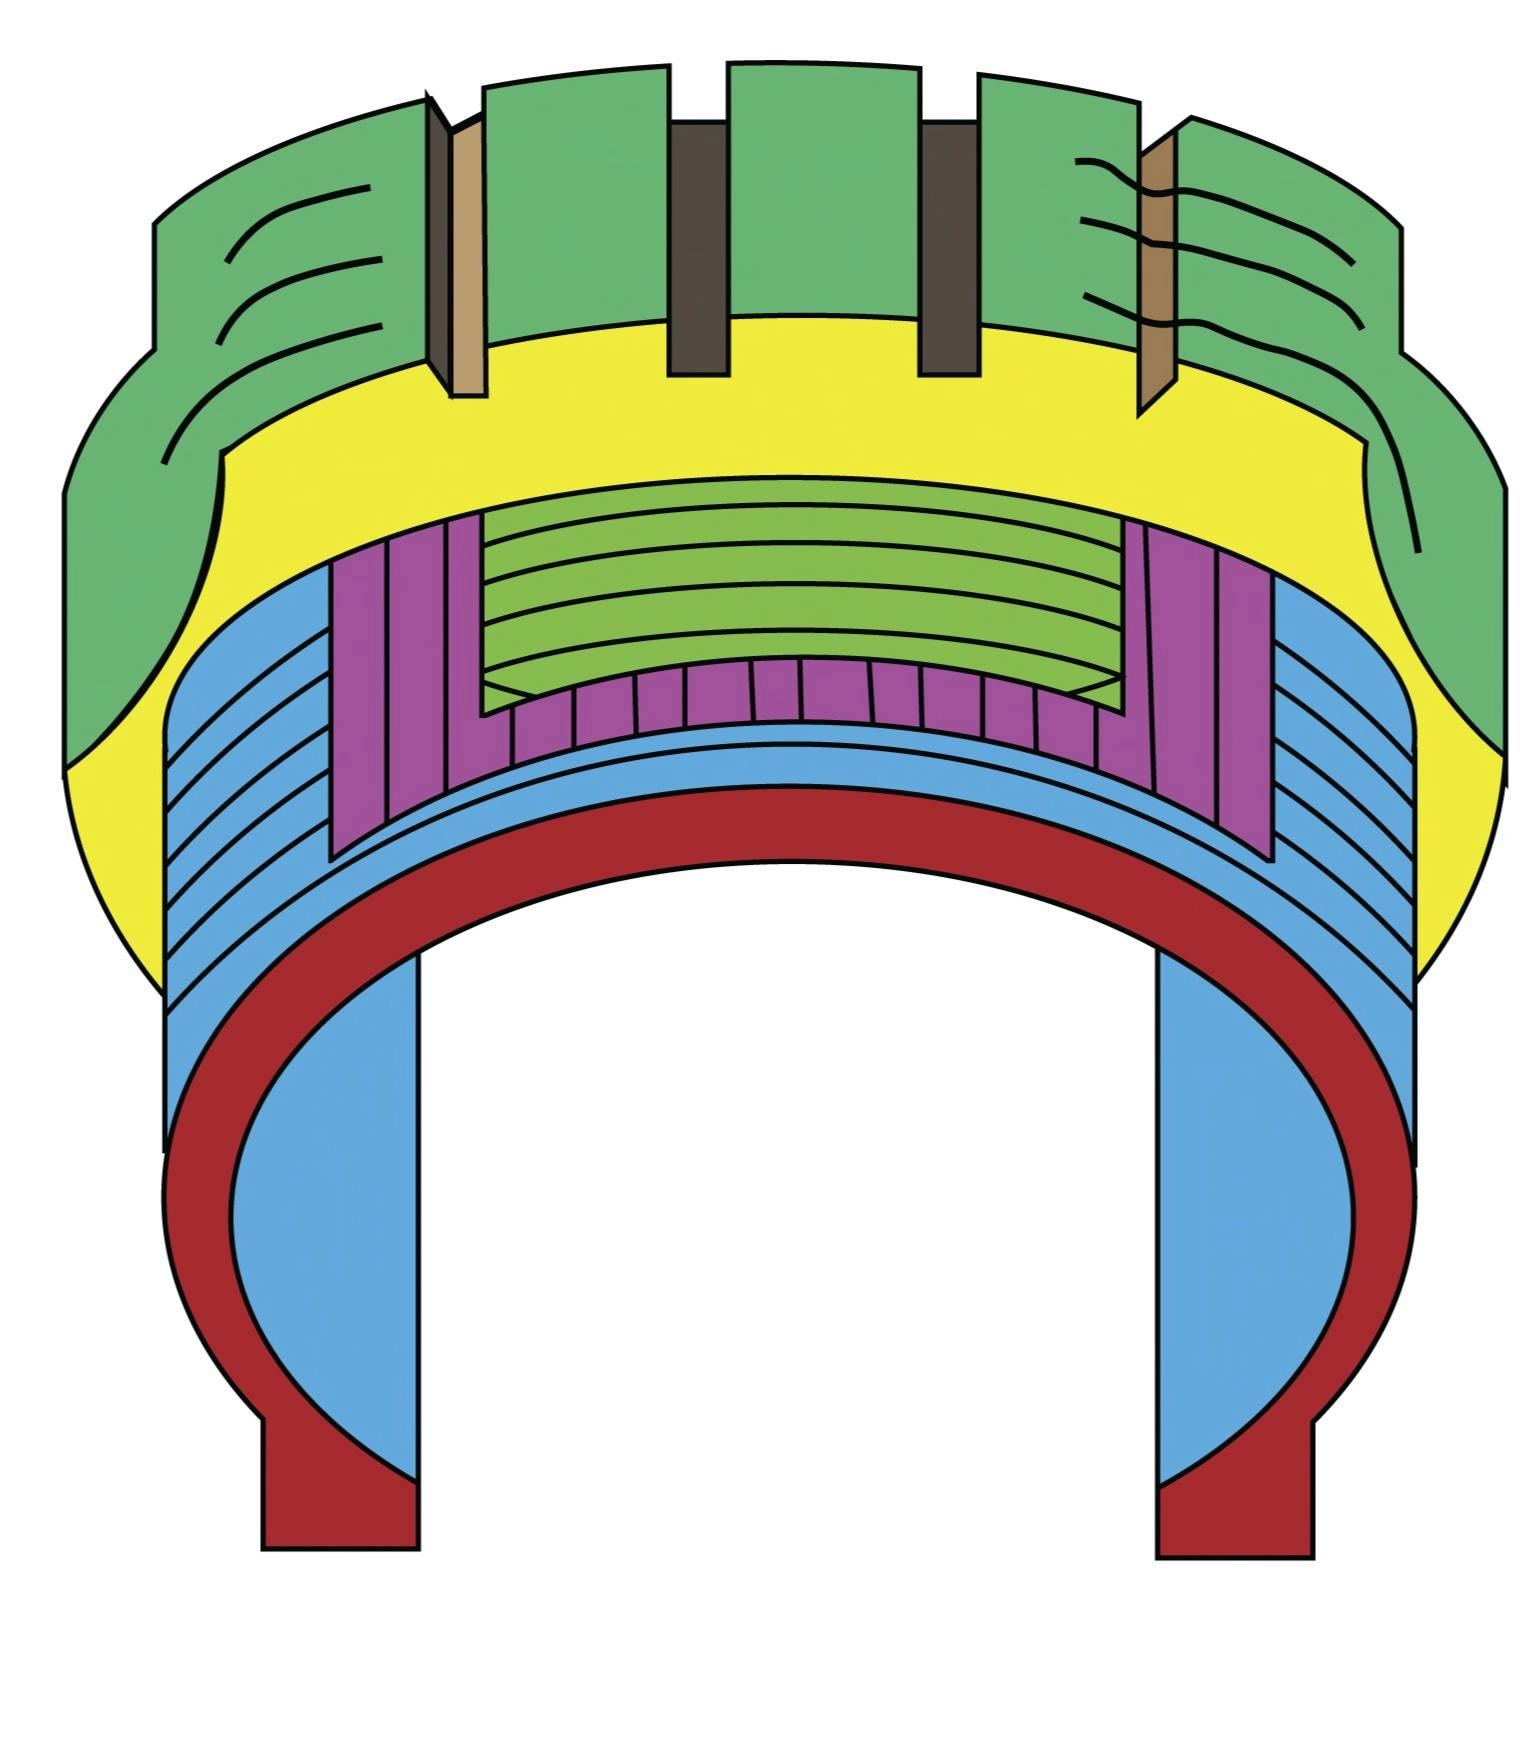 Neumático radial